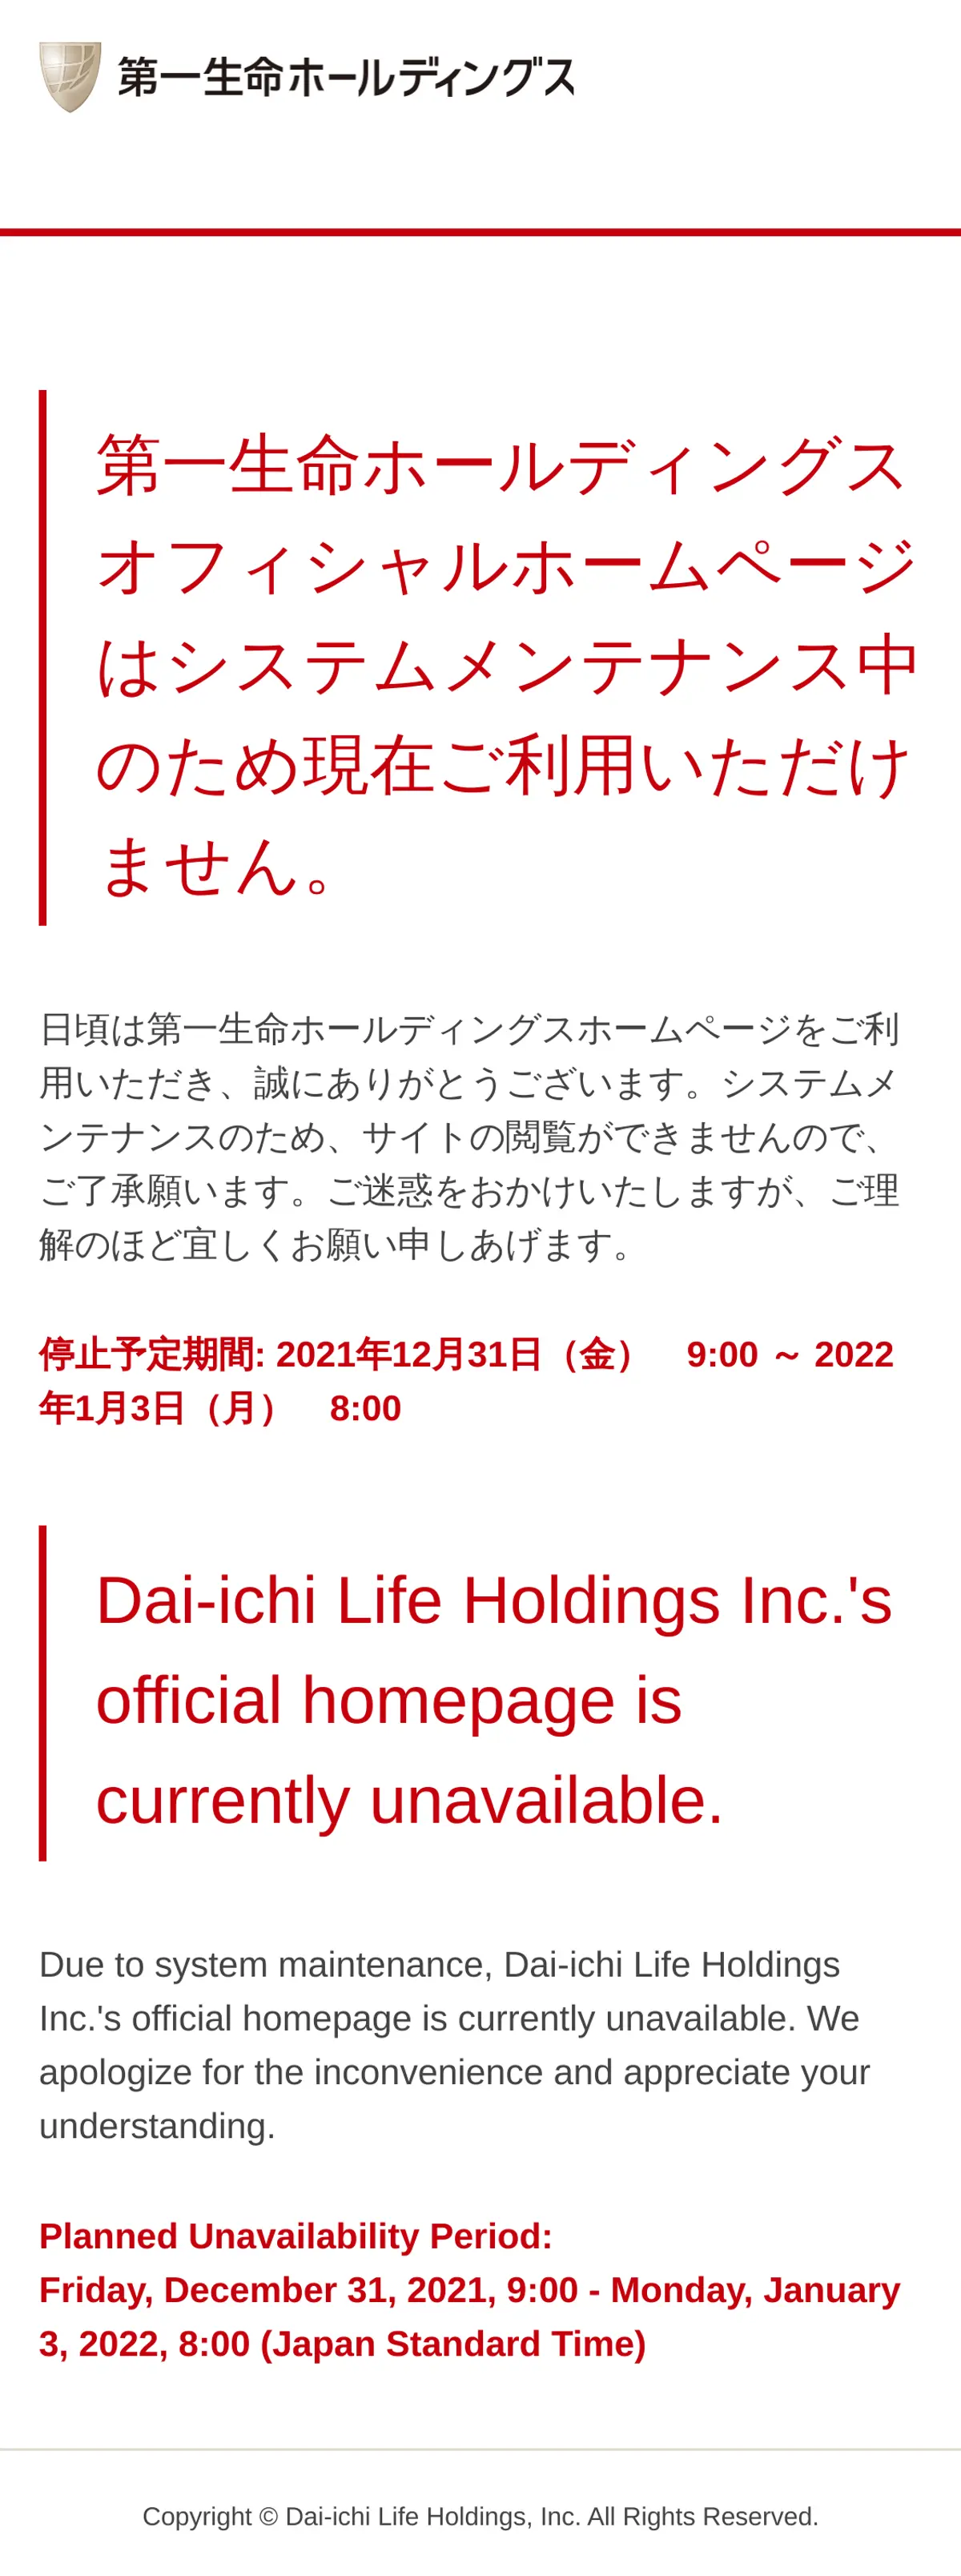 キャプチャ画面 会社名:第一生命ホールディングス株式会社プロジェクト名:Dai-ichi Life Innovation Lab 画面名:A デバイス名:SPカテゴリ:金融・保険タグ:SP